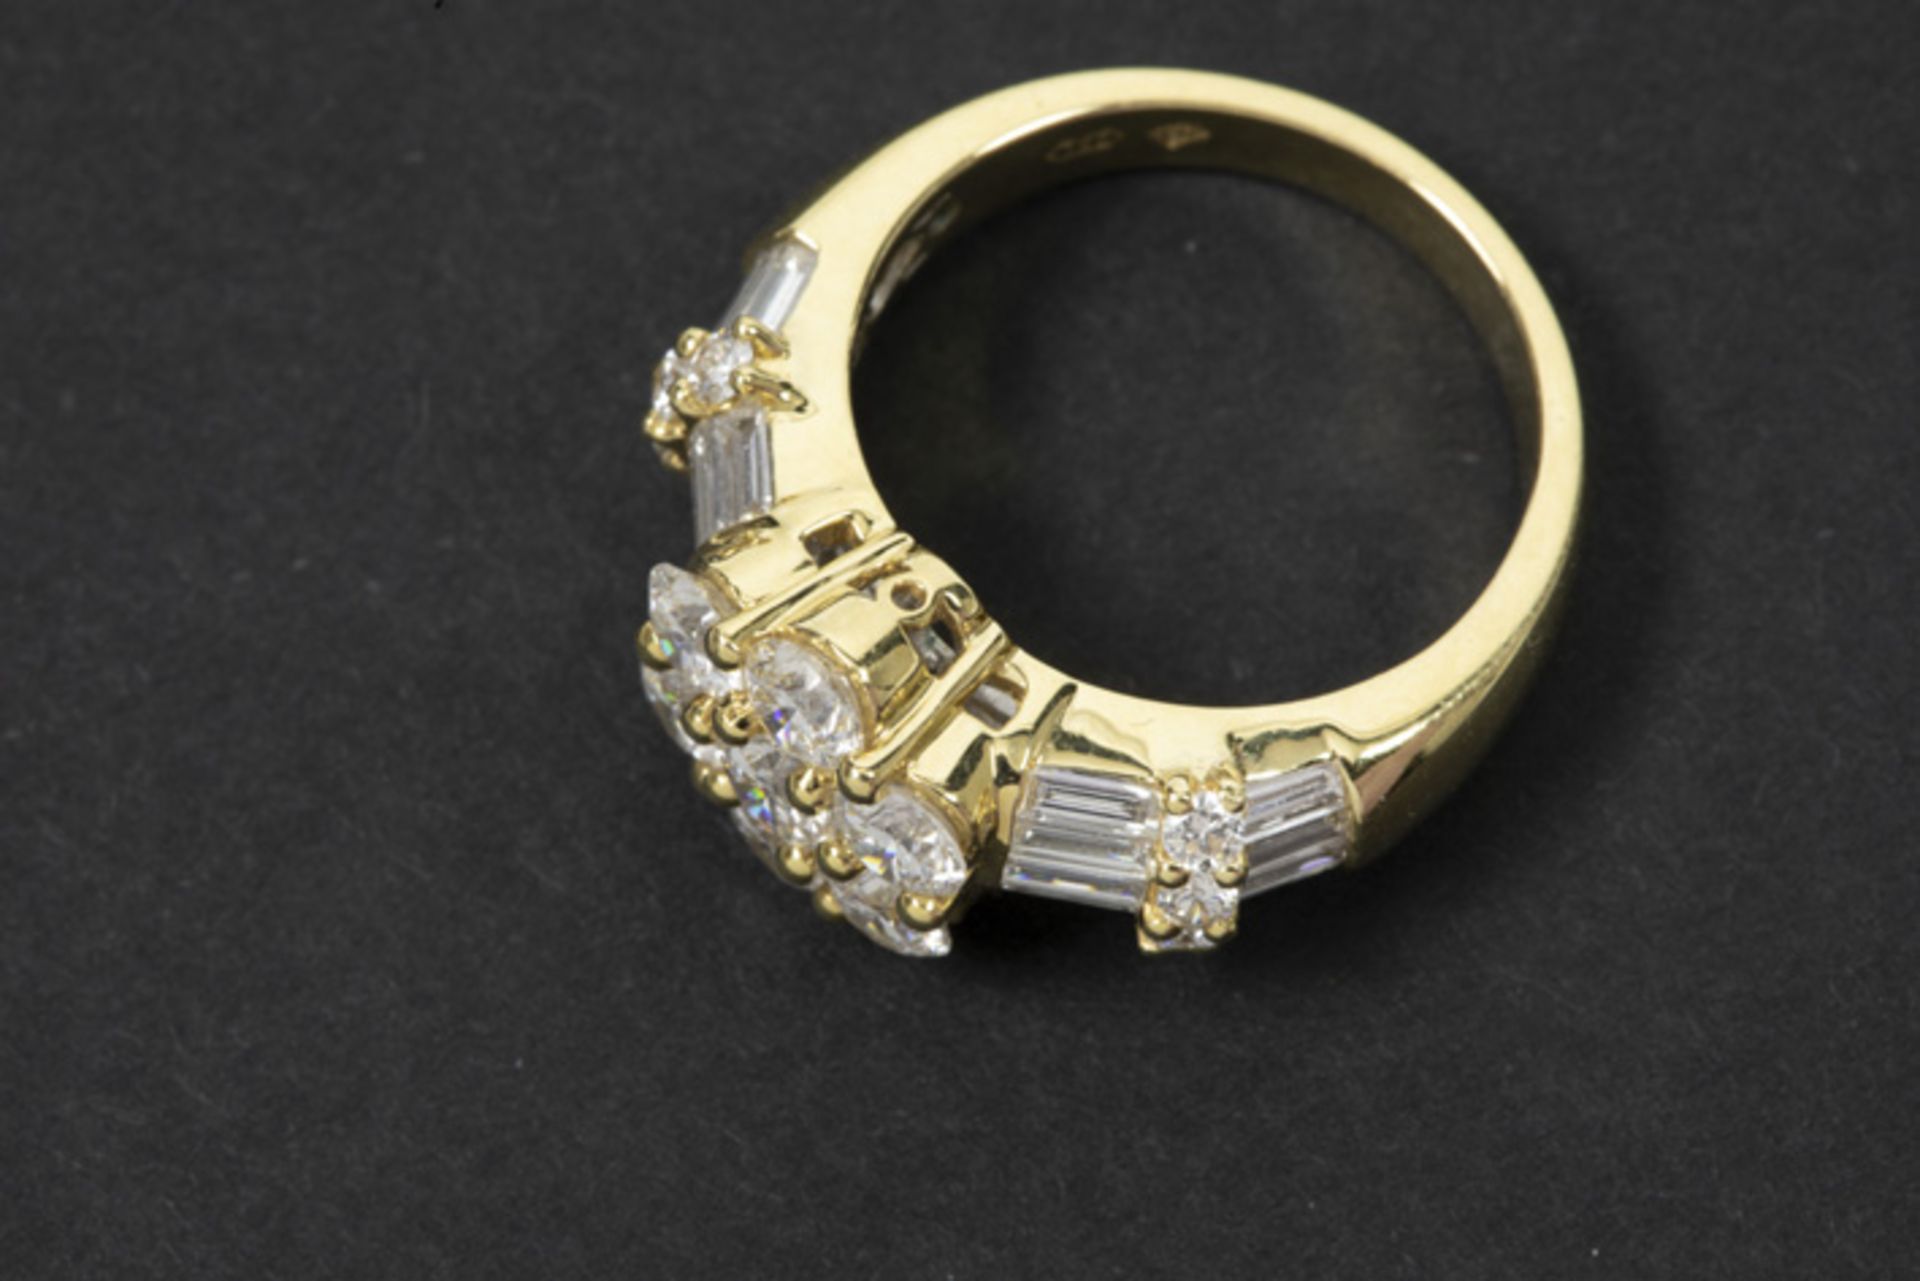 Bijhorende prachtige ring in geelgoud (18 karaat) met een centraal bloemvormig [...] - Bild 2 aus 2